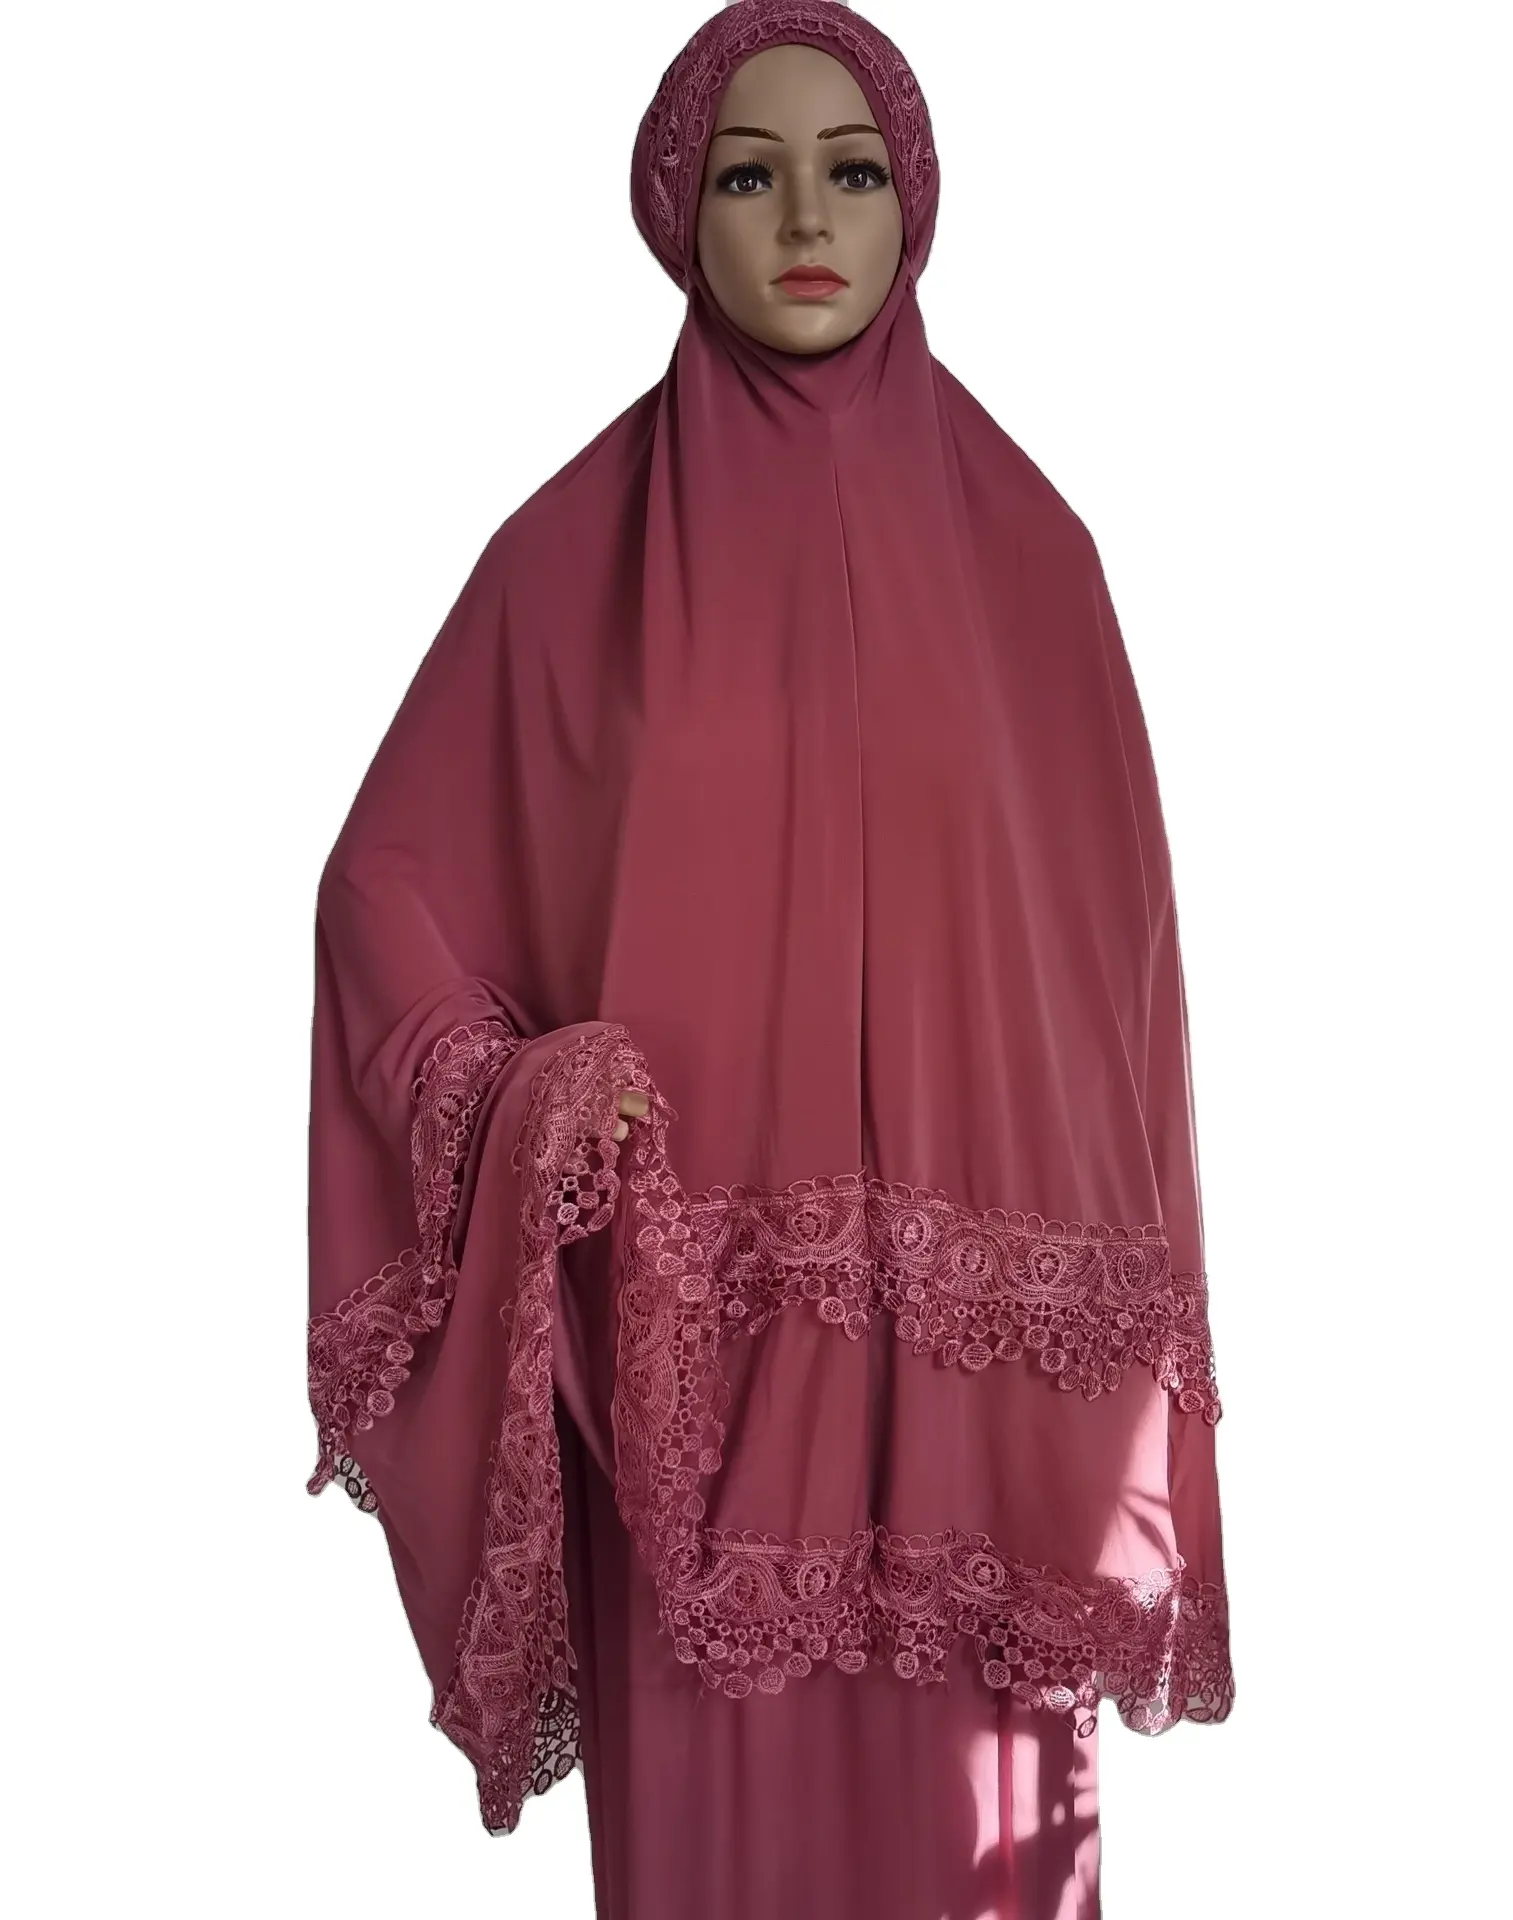 Freie Größe islamische Robe zweiteilig Set Jersey Stoff Gebets anzüge Spitze Stickerei Hijabb muslim Dame Abaya Kleid